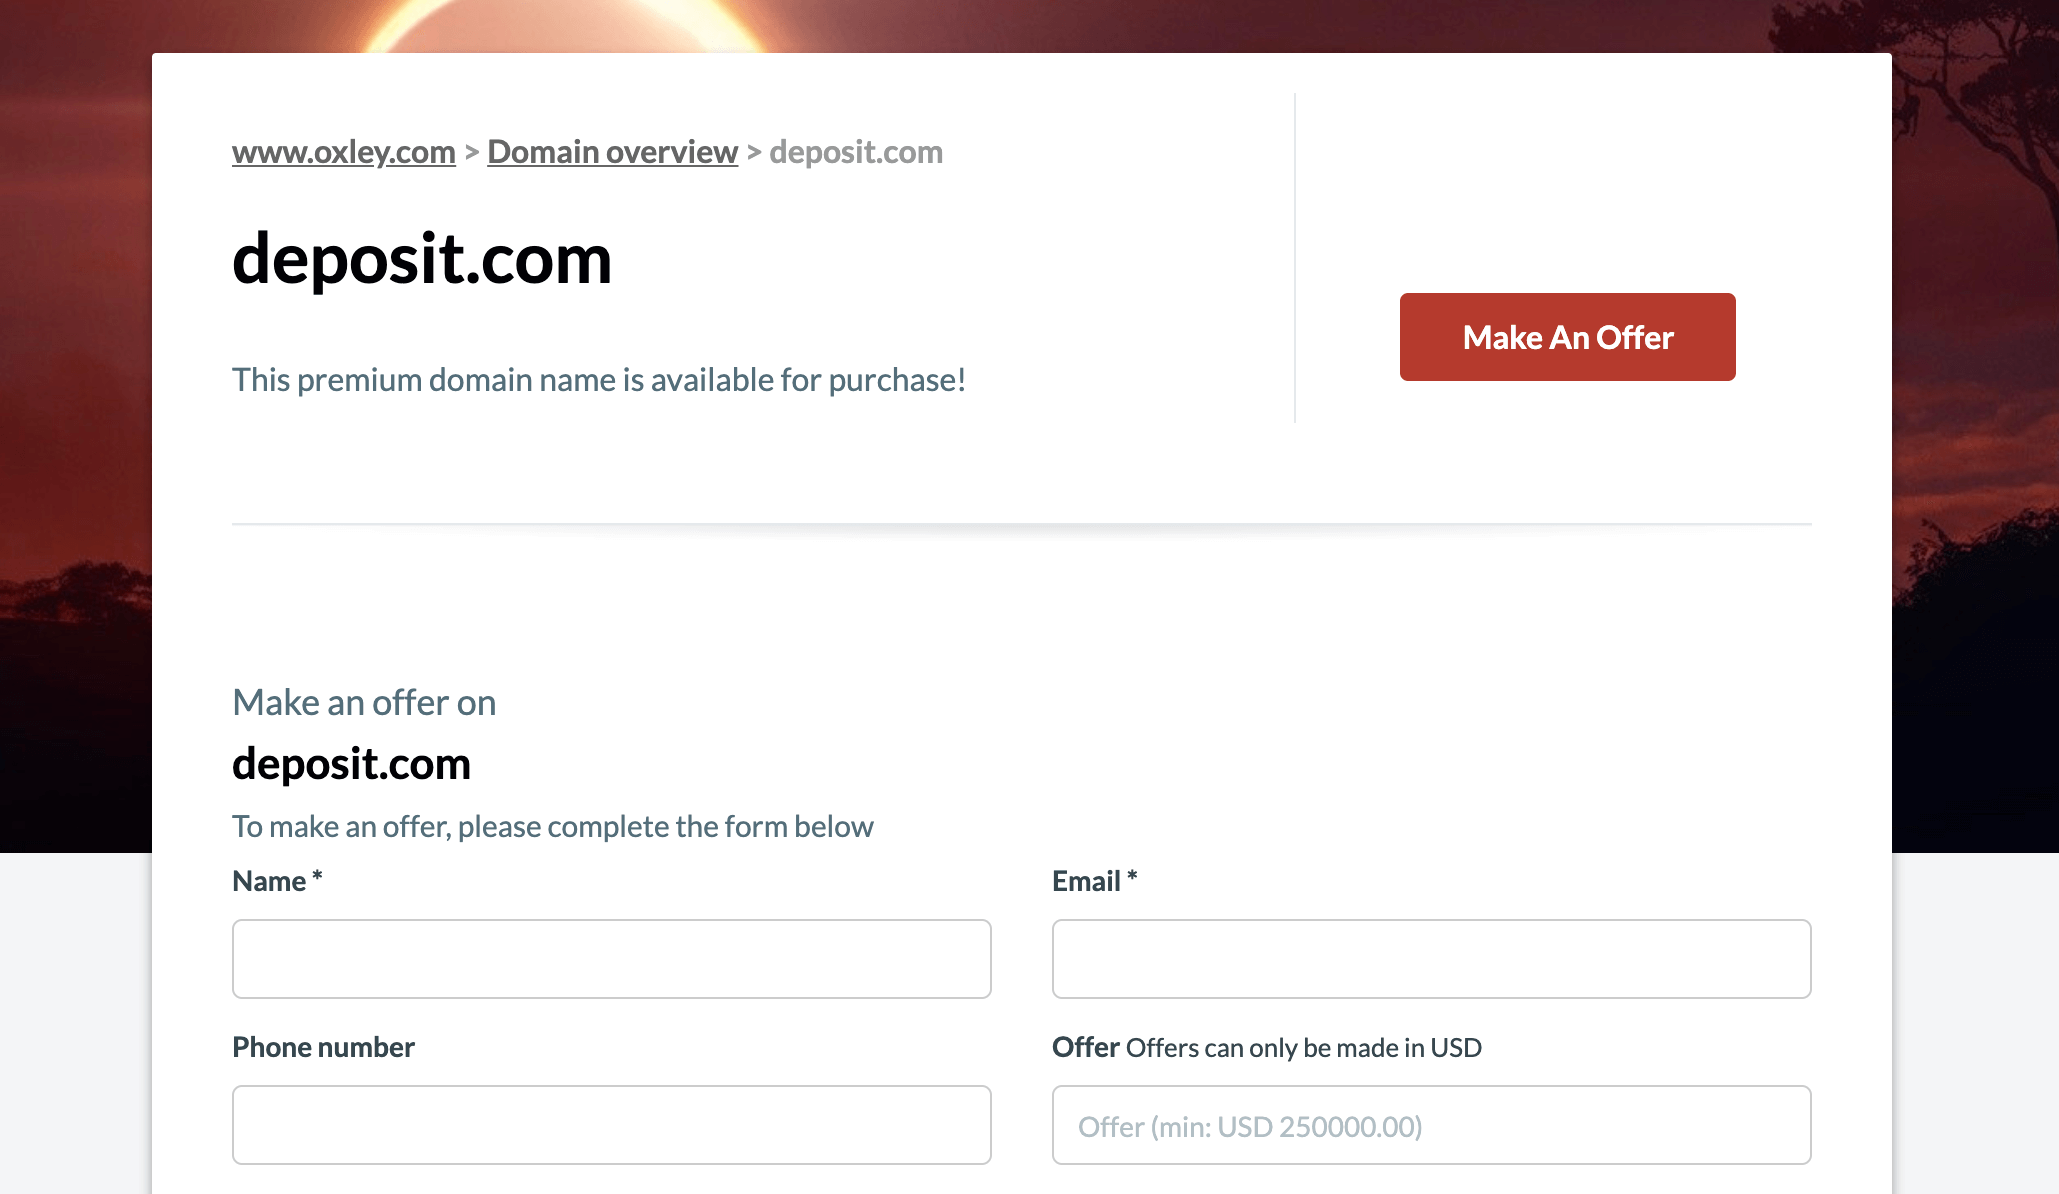 Deposit.com